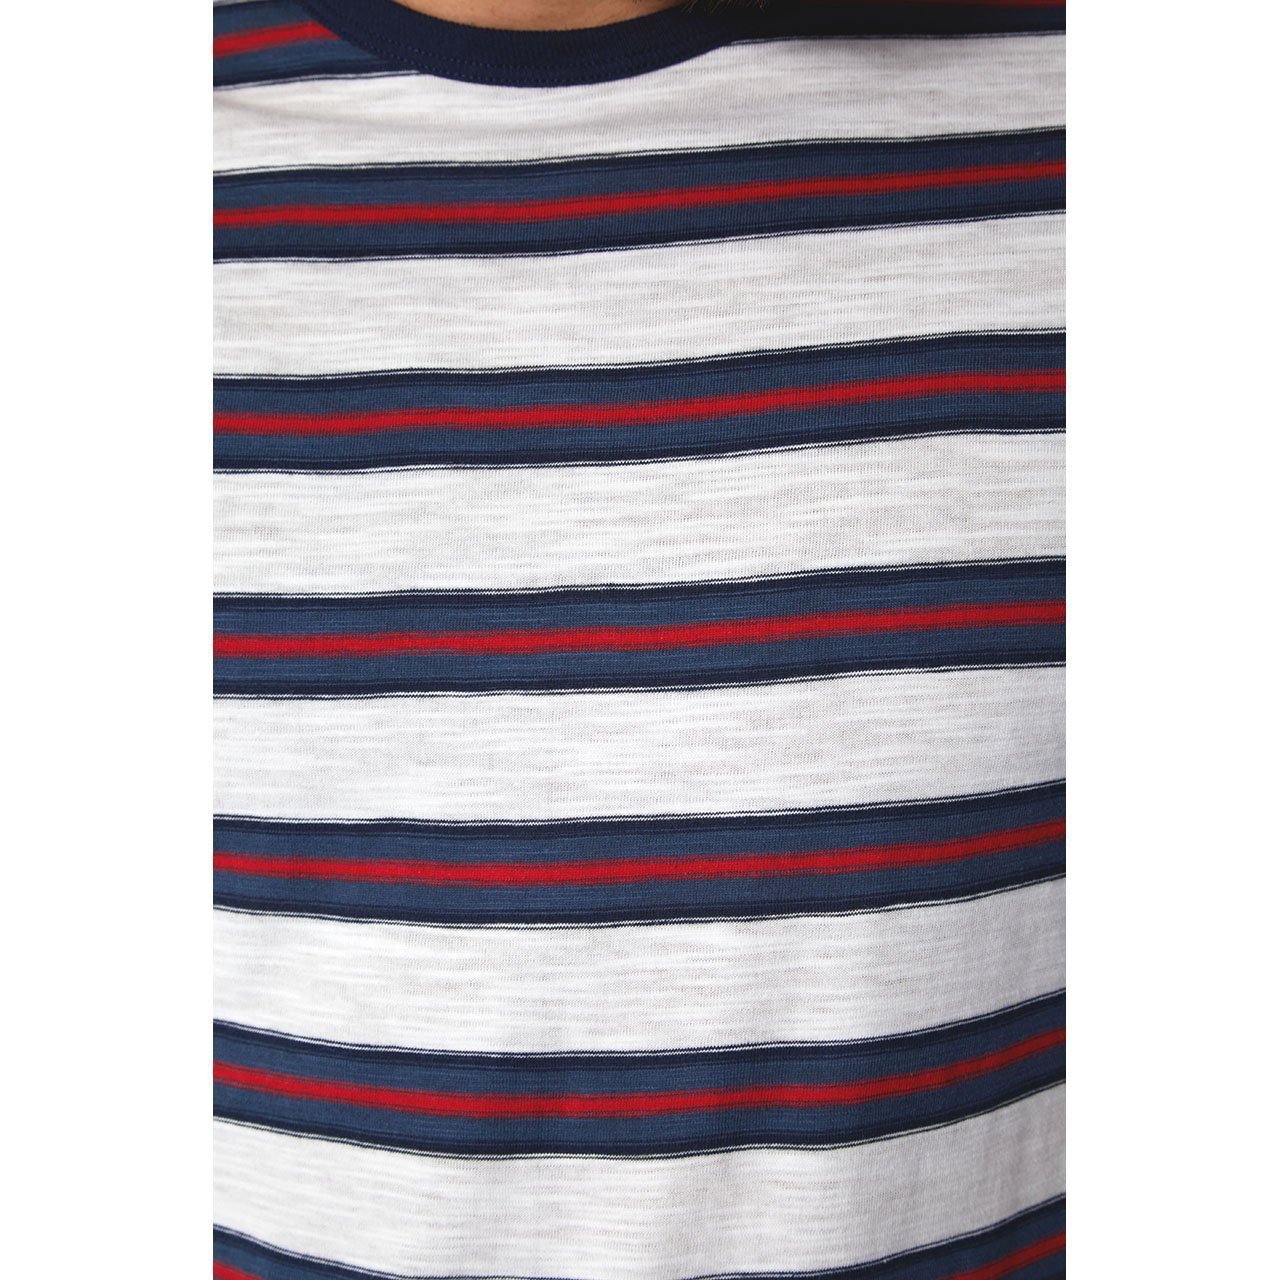 PX Clothing Men's Mateo Striped Tee - Men - Apparel - Shirts - T-Shirts - Benn~Burry